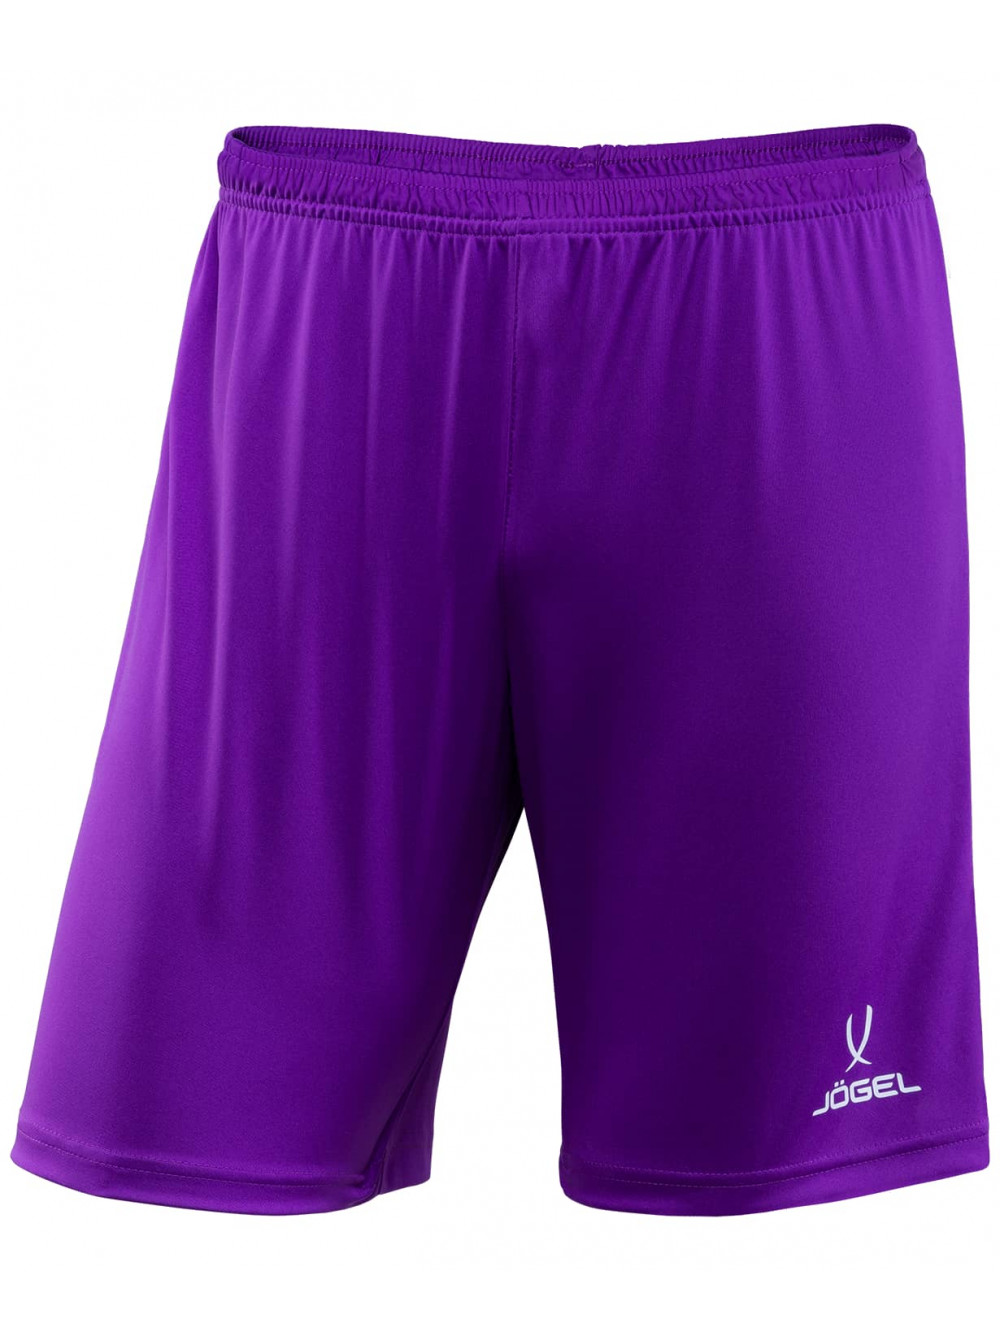 фото Jögel шорты футбольные camp jfs-1120-v1-k, фиолетовый/белый, детские - xs jogel